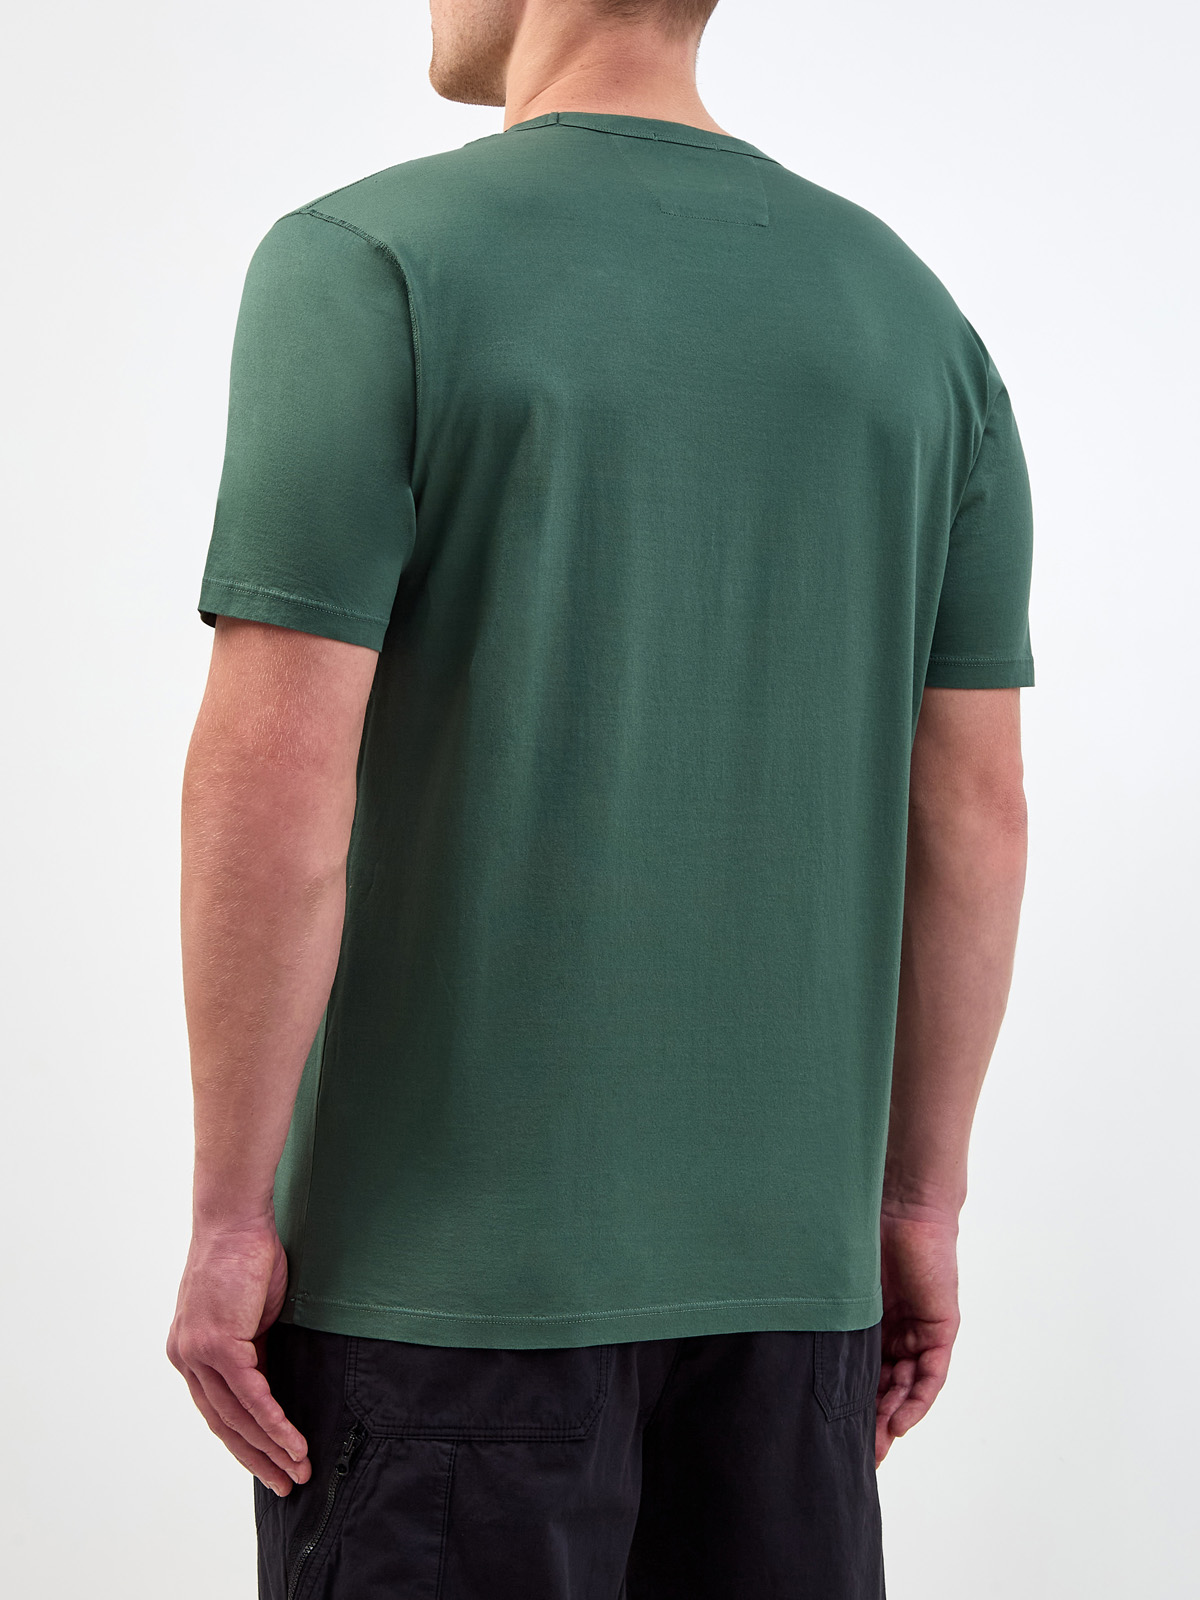 Однотонная футболка из гладкого хлопка джерси с нашивкой C.P.COMPANY, цвет зеленый, размер 48;52;54 - фото 4